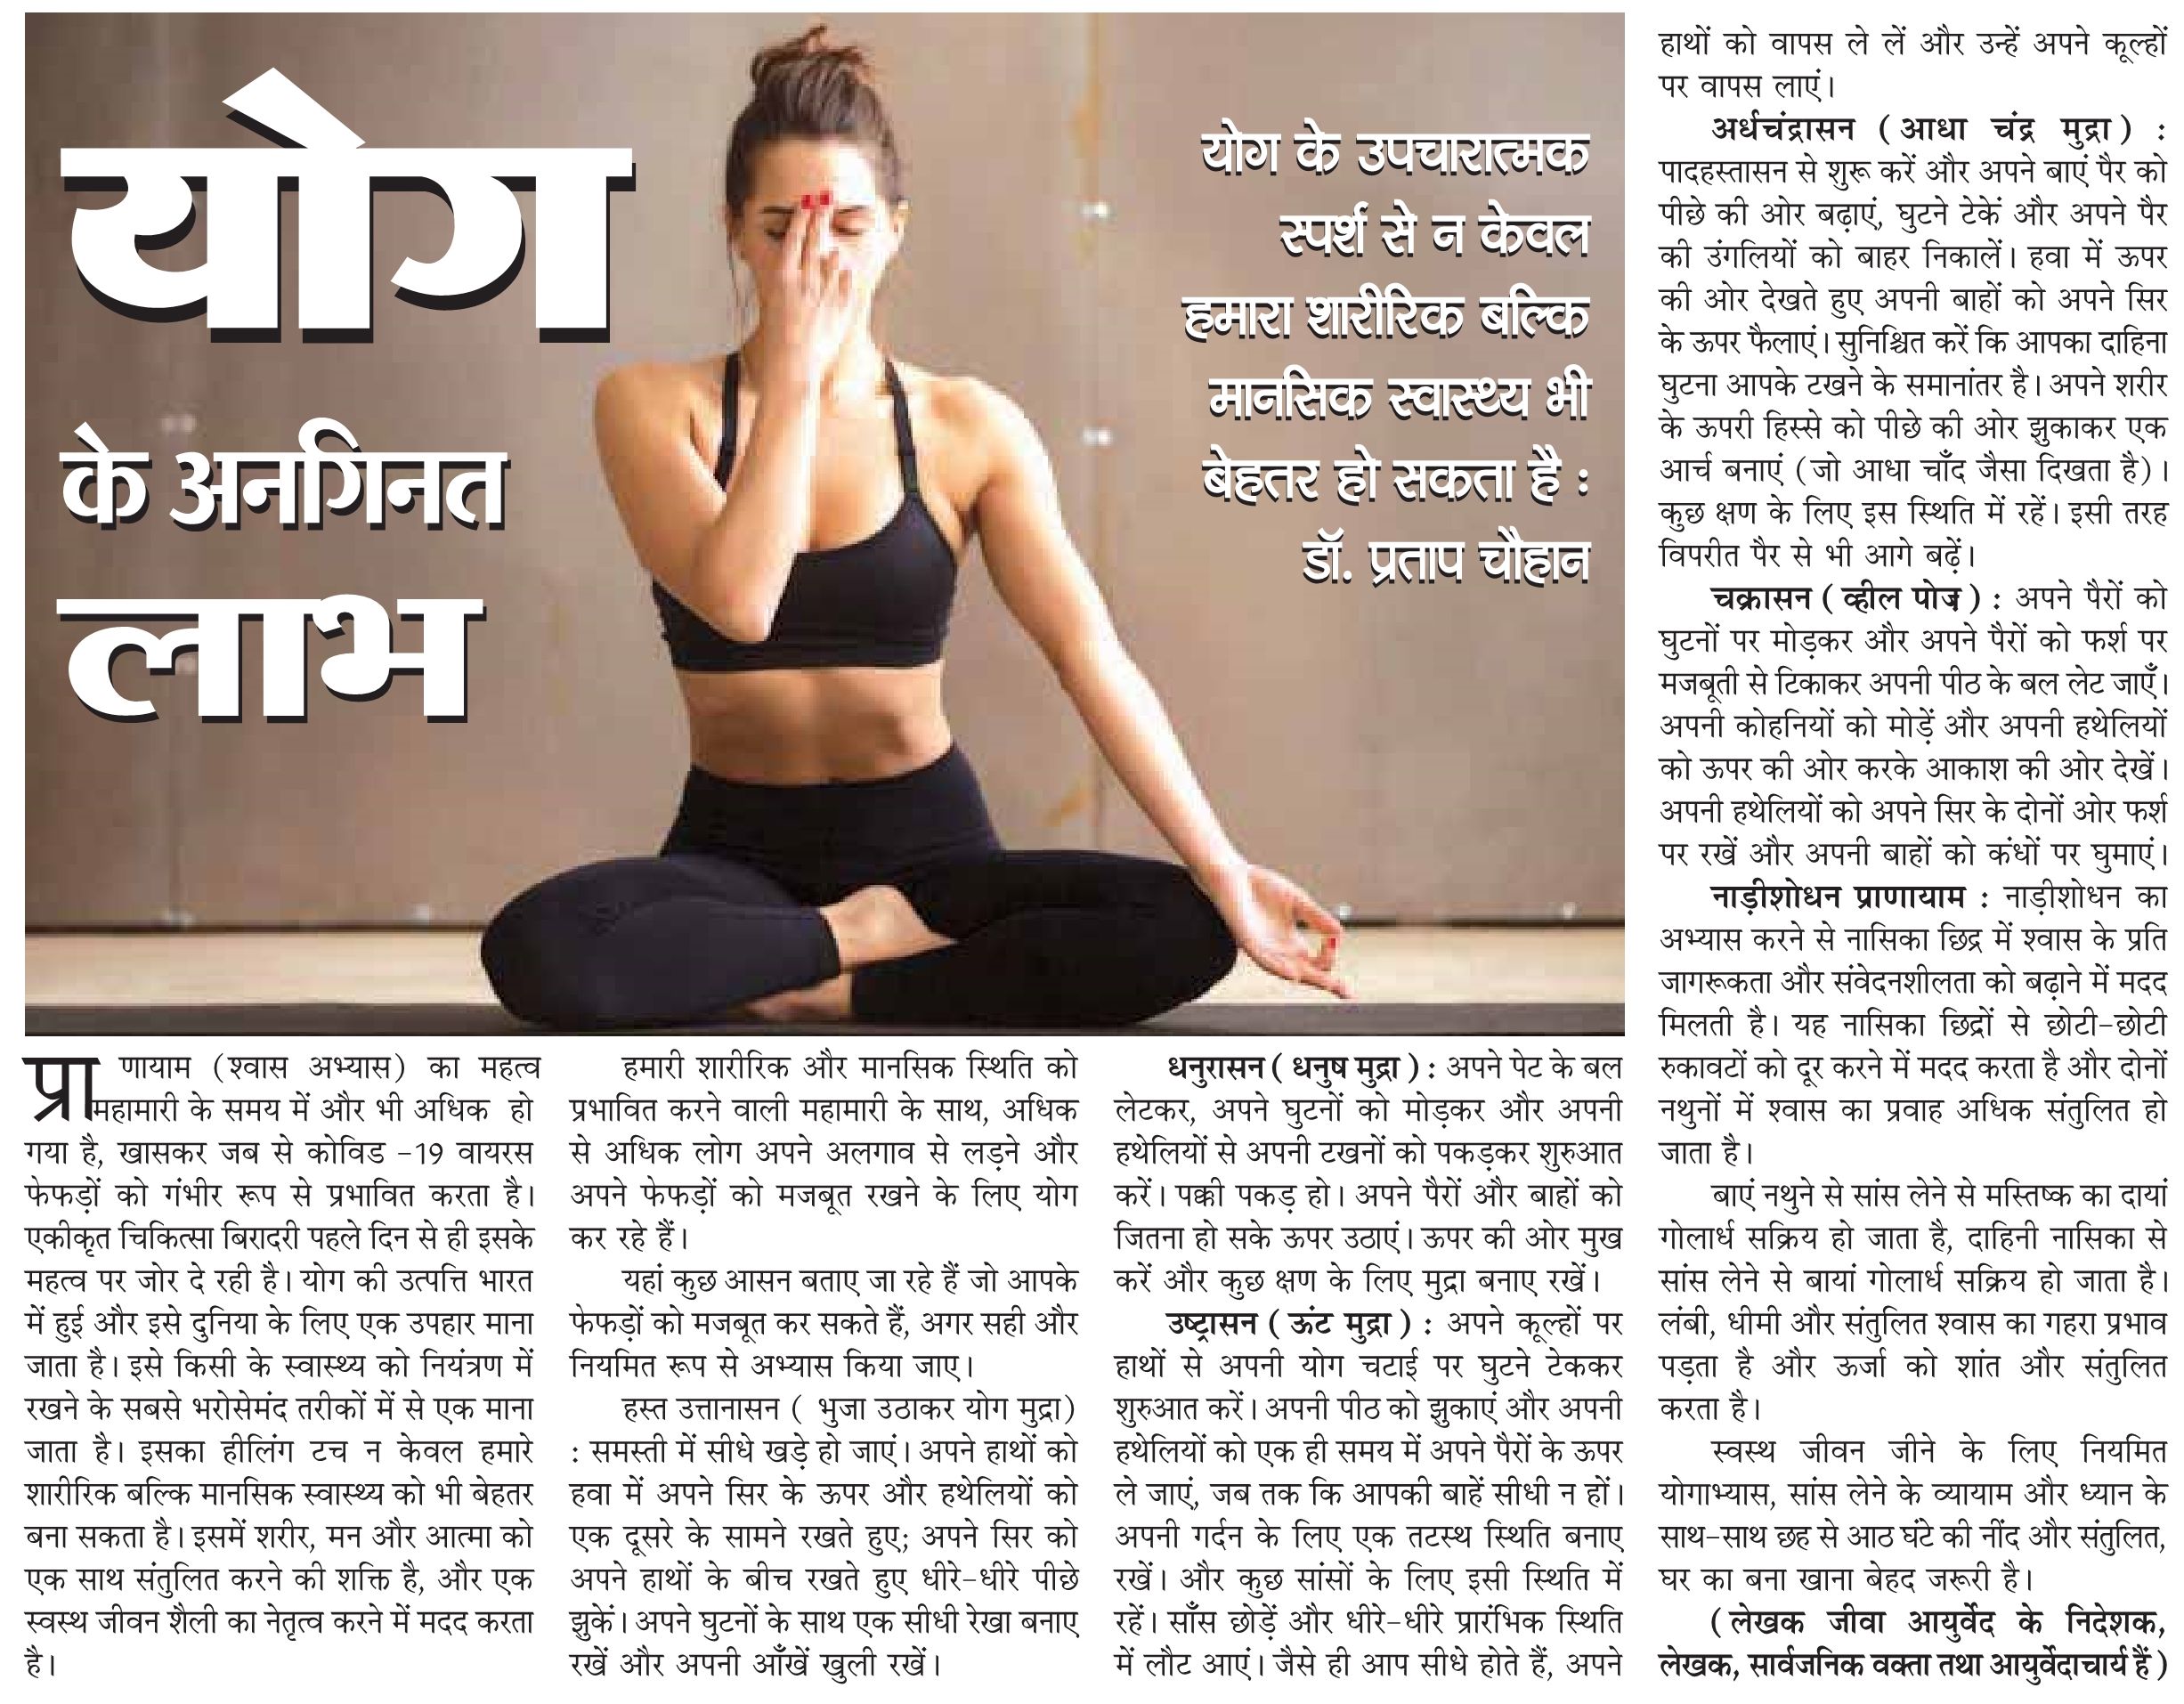 Jiva news about yoga benefits